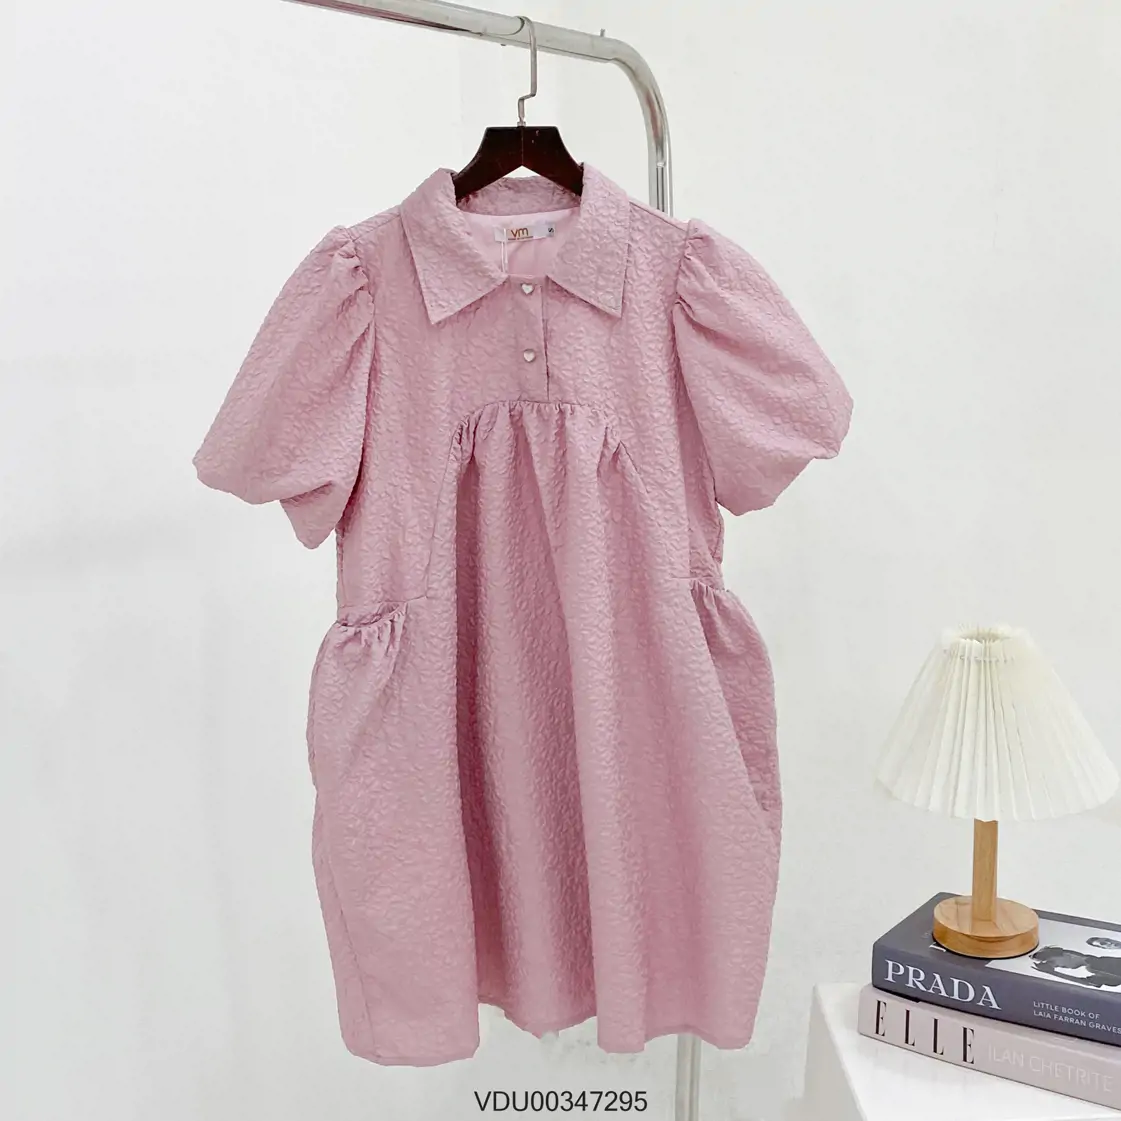 Đầm babydoll hoa nhí cổ V tay dài KK111-12 | Thời trang công sở K&K Fashion